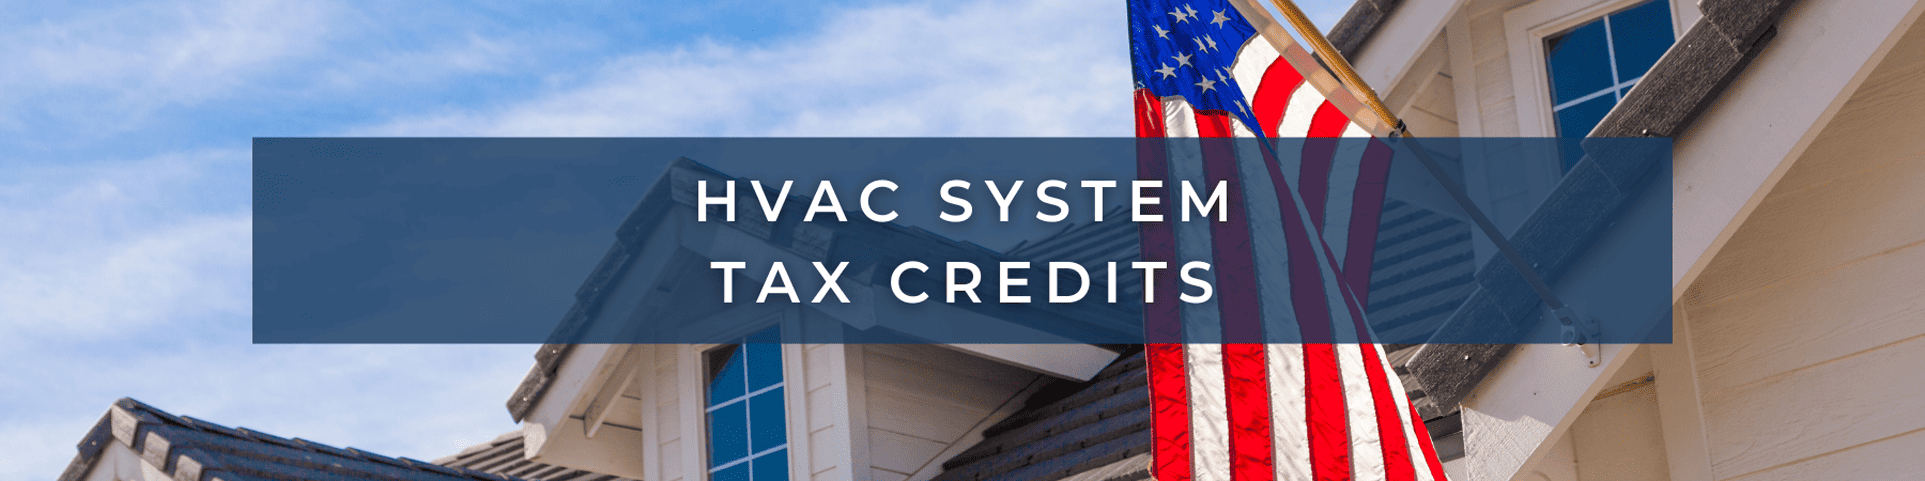 Hvac System Tax Credits